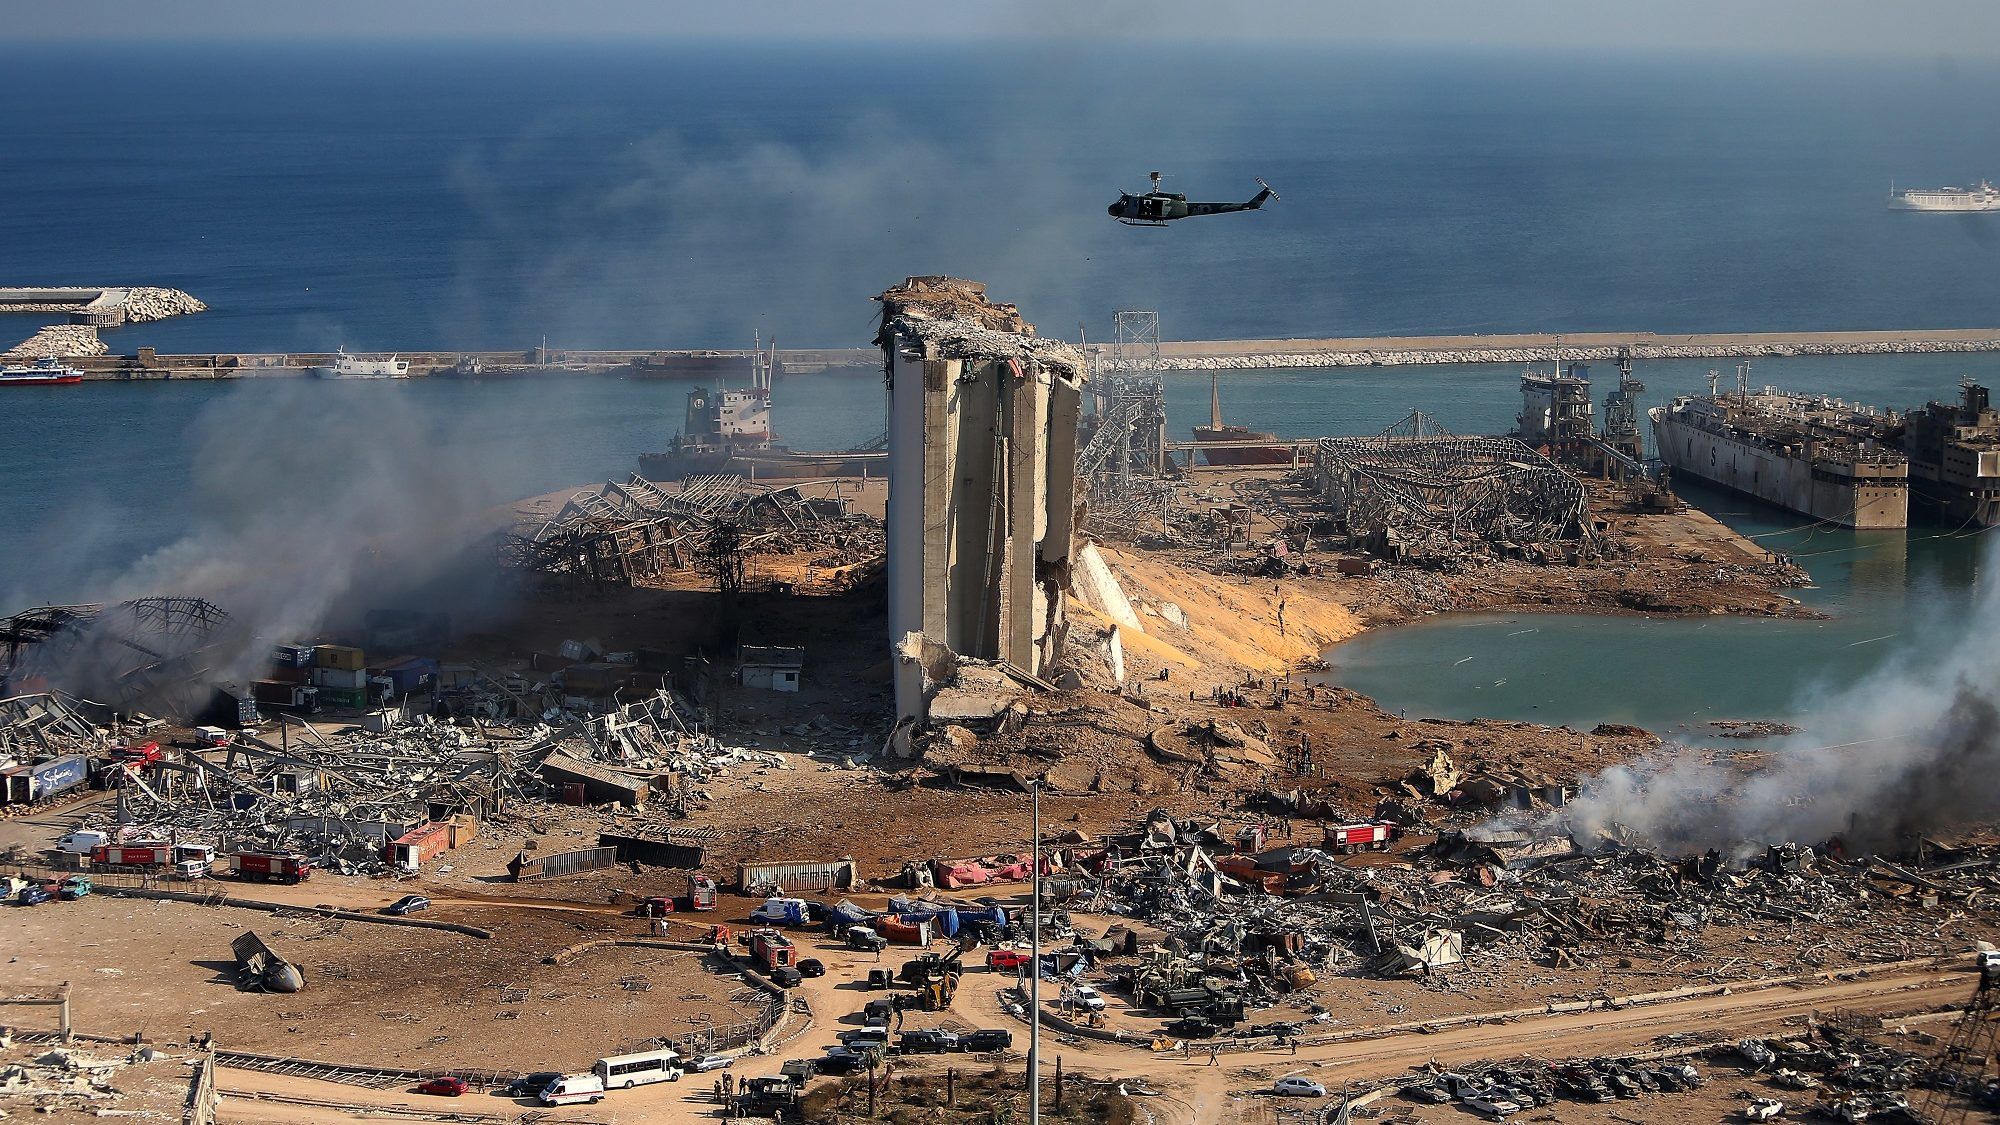 Hat hónapja figyelmeztettek, ha nem viszik el a 2750 tonna ammónium-nitrátot, felrobban egész Bejrút